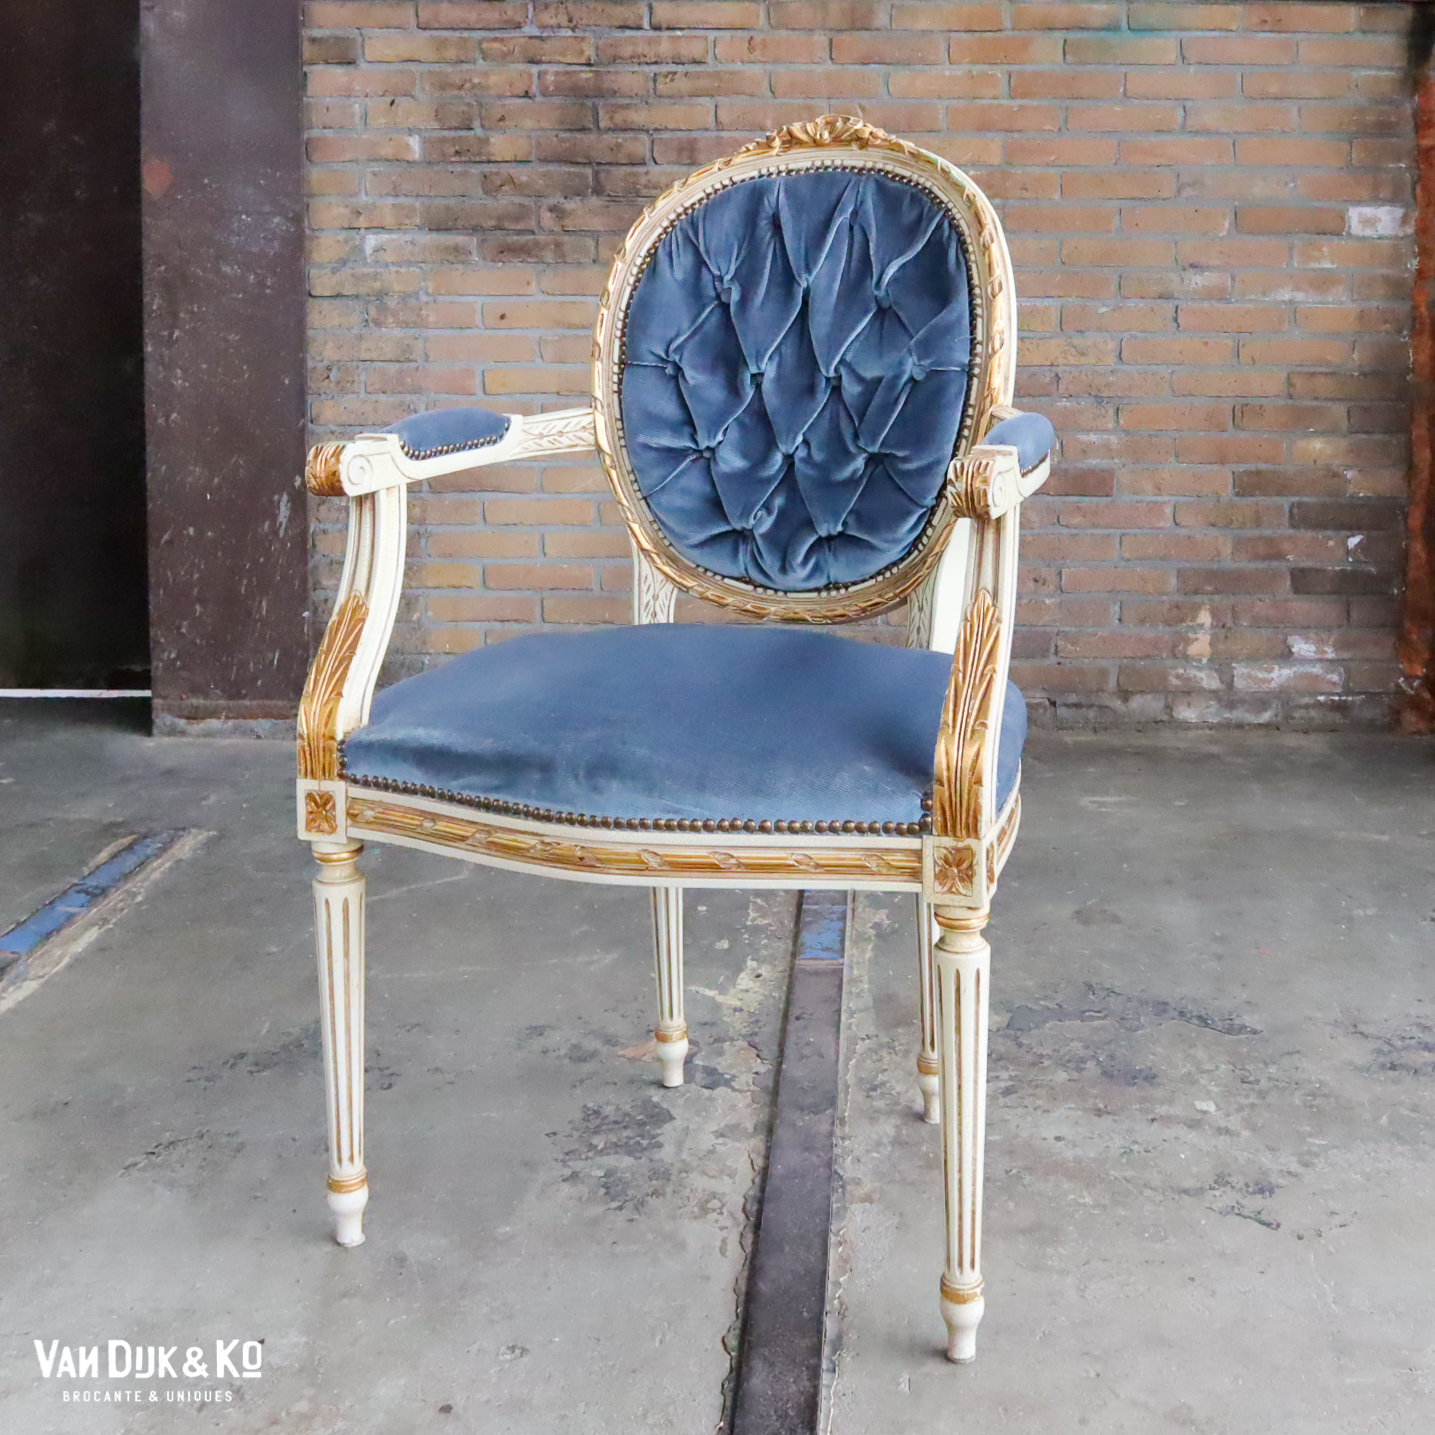 soort Mysterie Anesthesie Vintage barok stoel » Van Dijk & Ko